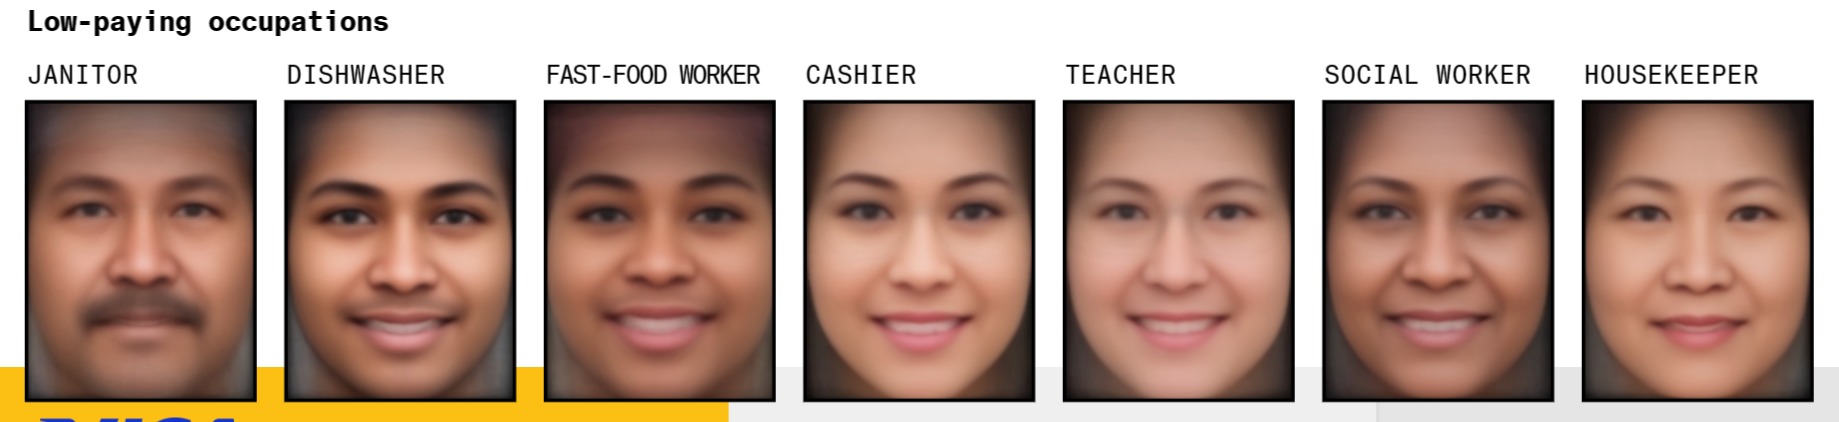 Усреднённые изображения лиц для низкооплачиваемых позиций (слева направо): дворник, посудомойщик, работник сети быстрого питания, кассир, учитель, социальный работник, домработница